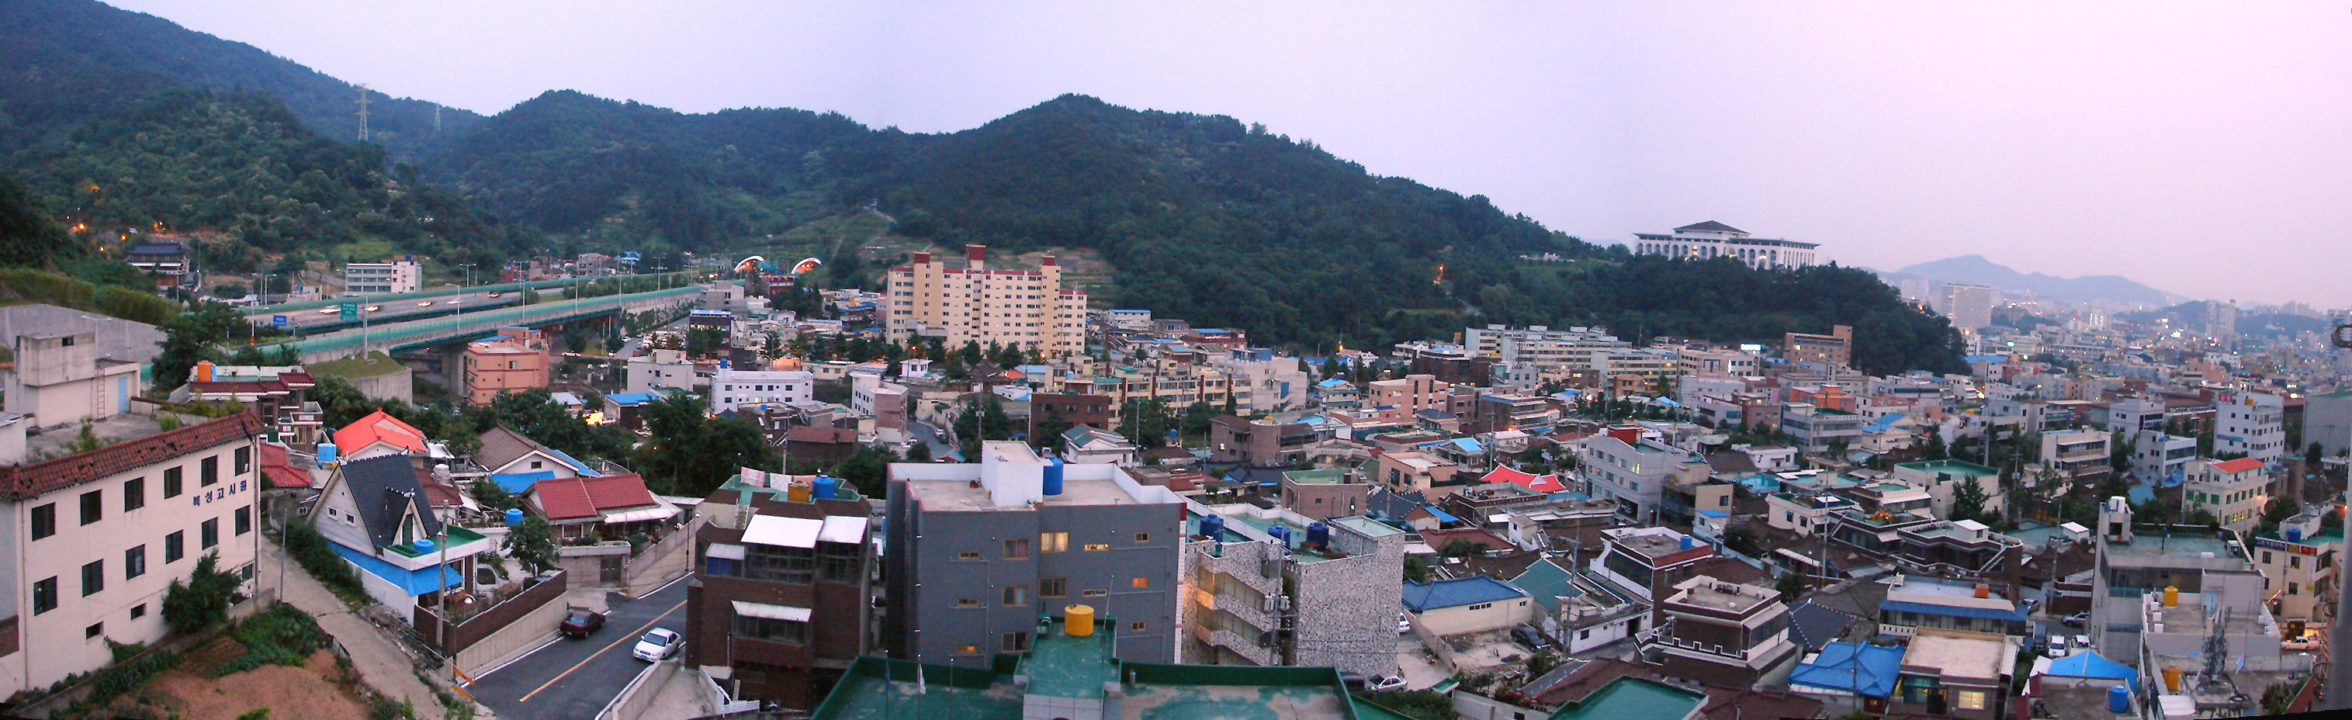 Accident dans une boite de nuit à Gwangju : des athlètes blessés